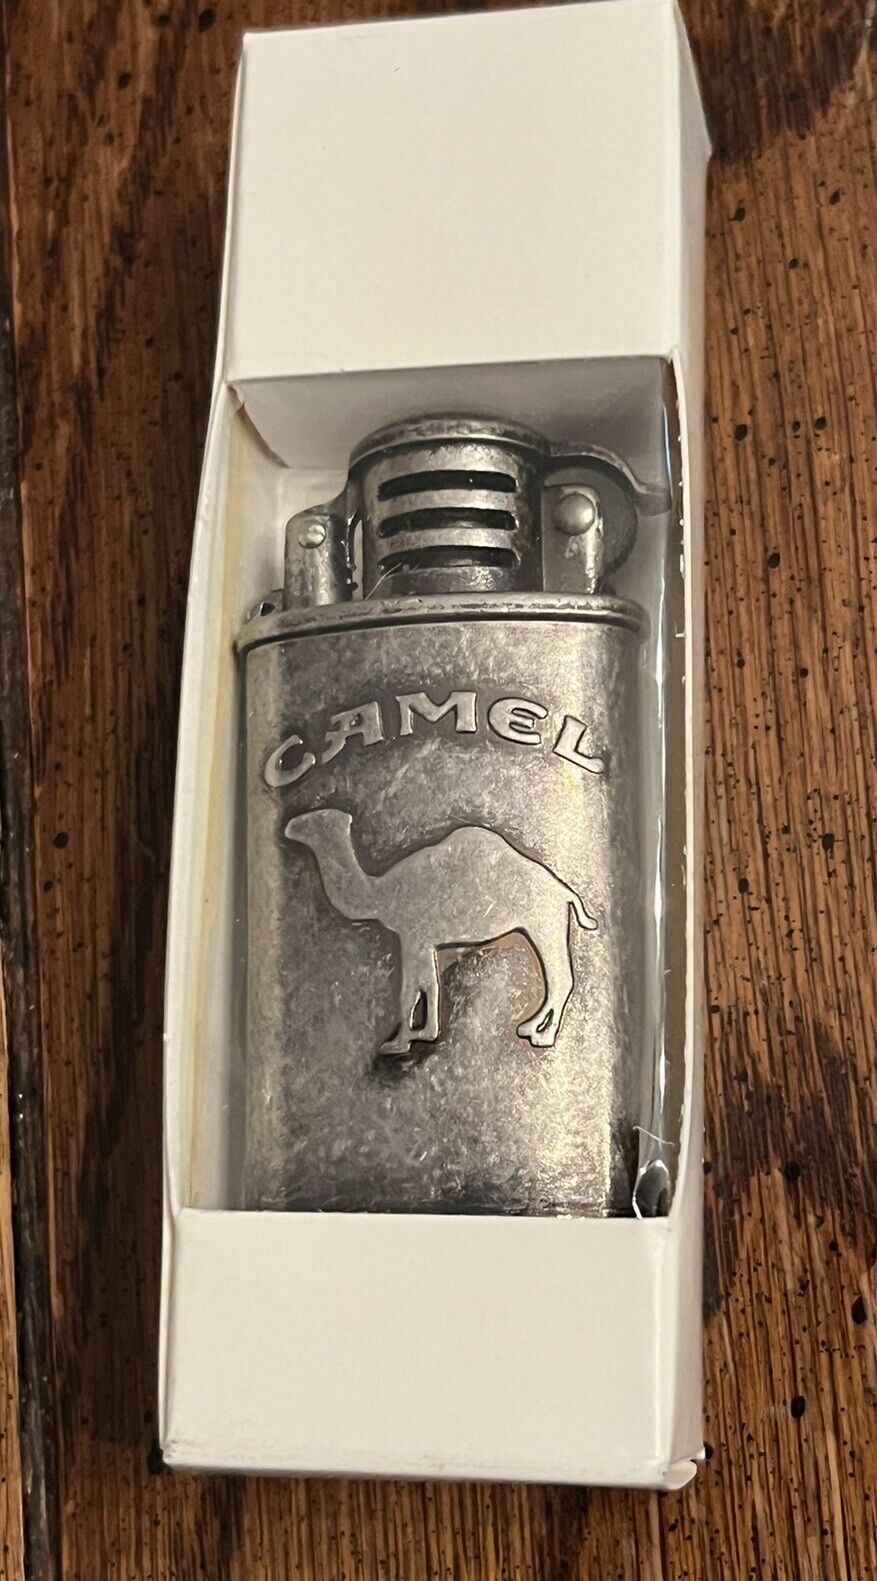 Vintage Cigarette Lighter Camel Promotional Metal Flip Top Style Lighter NOS VTG